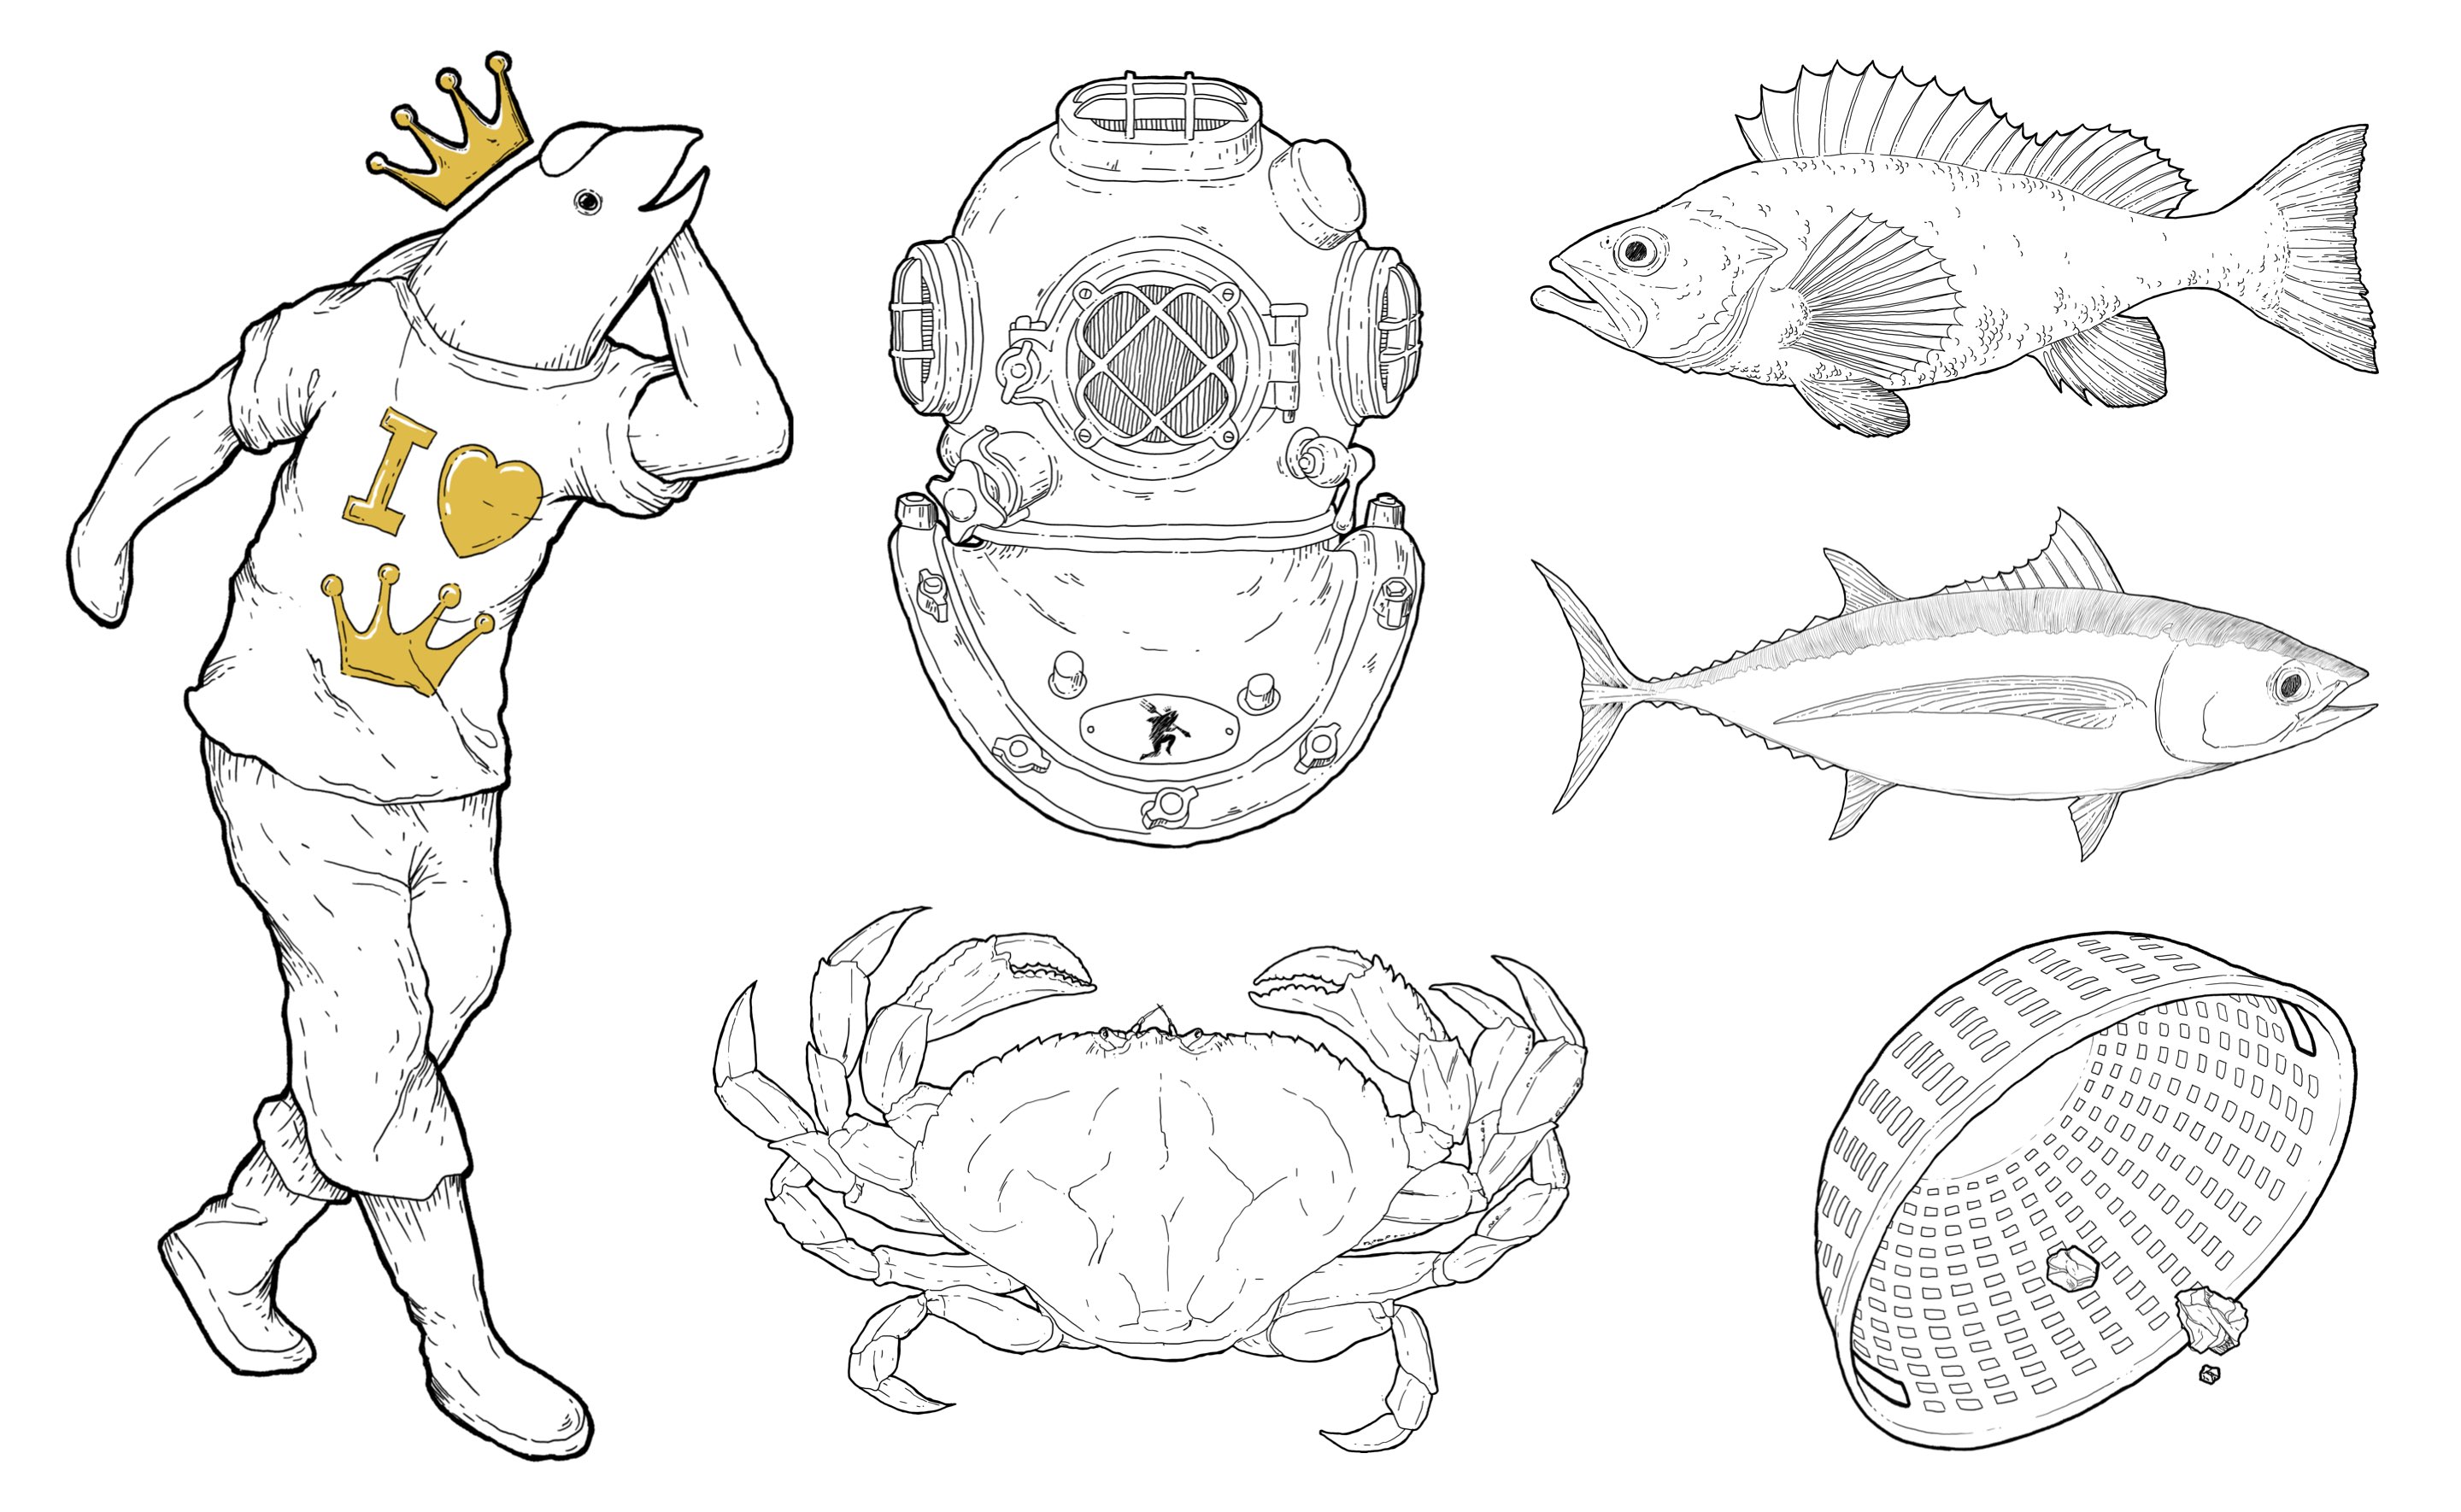 Fishpeople - Illustration